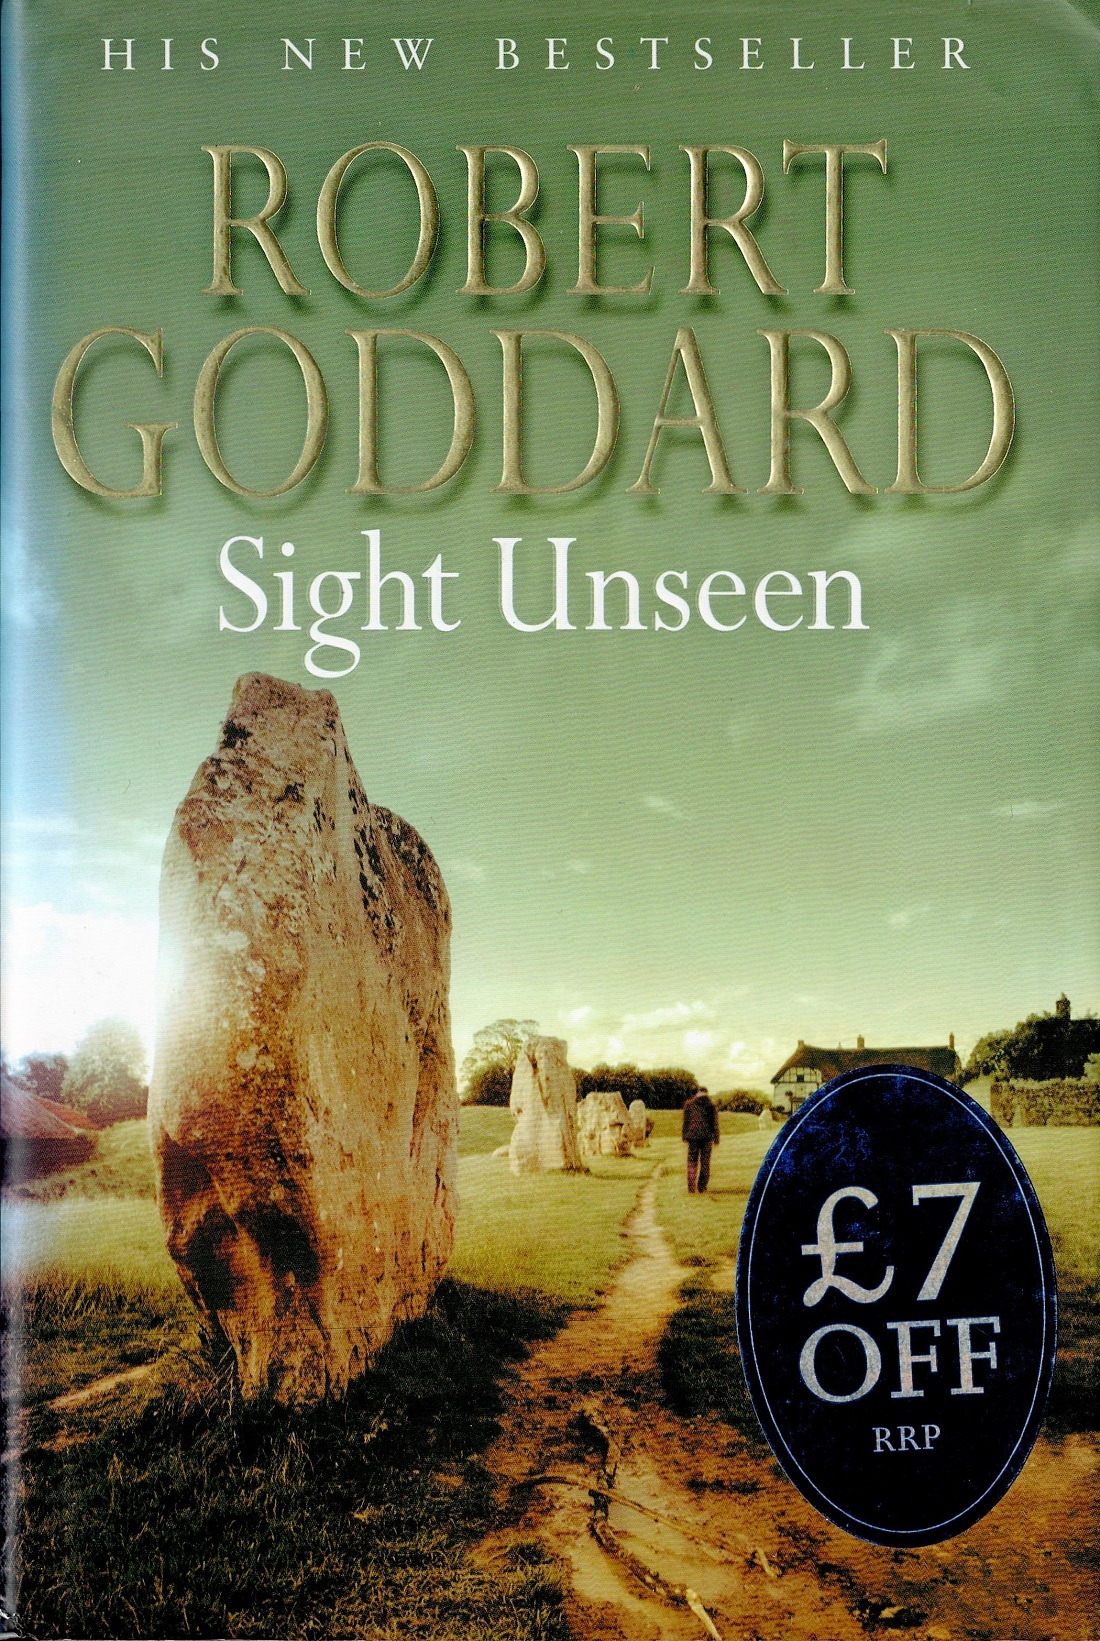 Signed Book Robert Goddard Sight Unseen 2005 First Edition Hardback Book Signed by Robert Goddard on